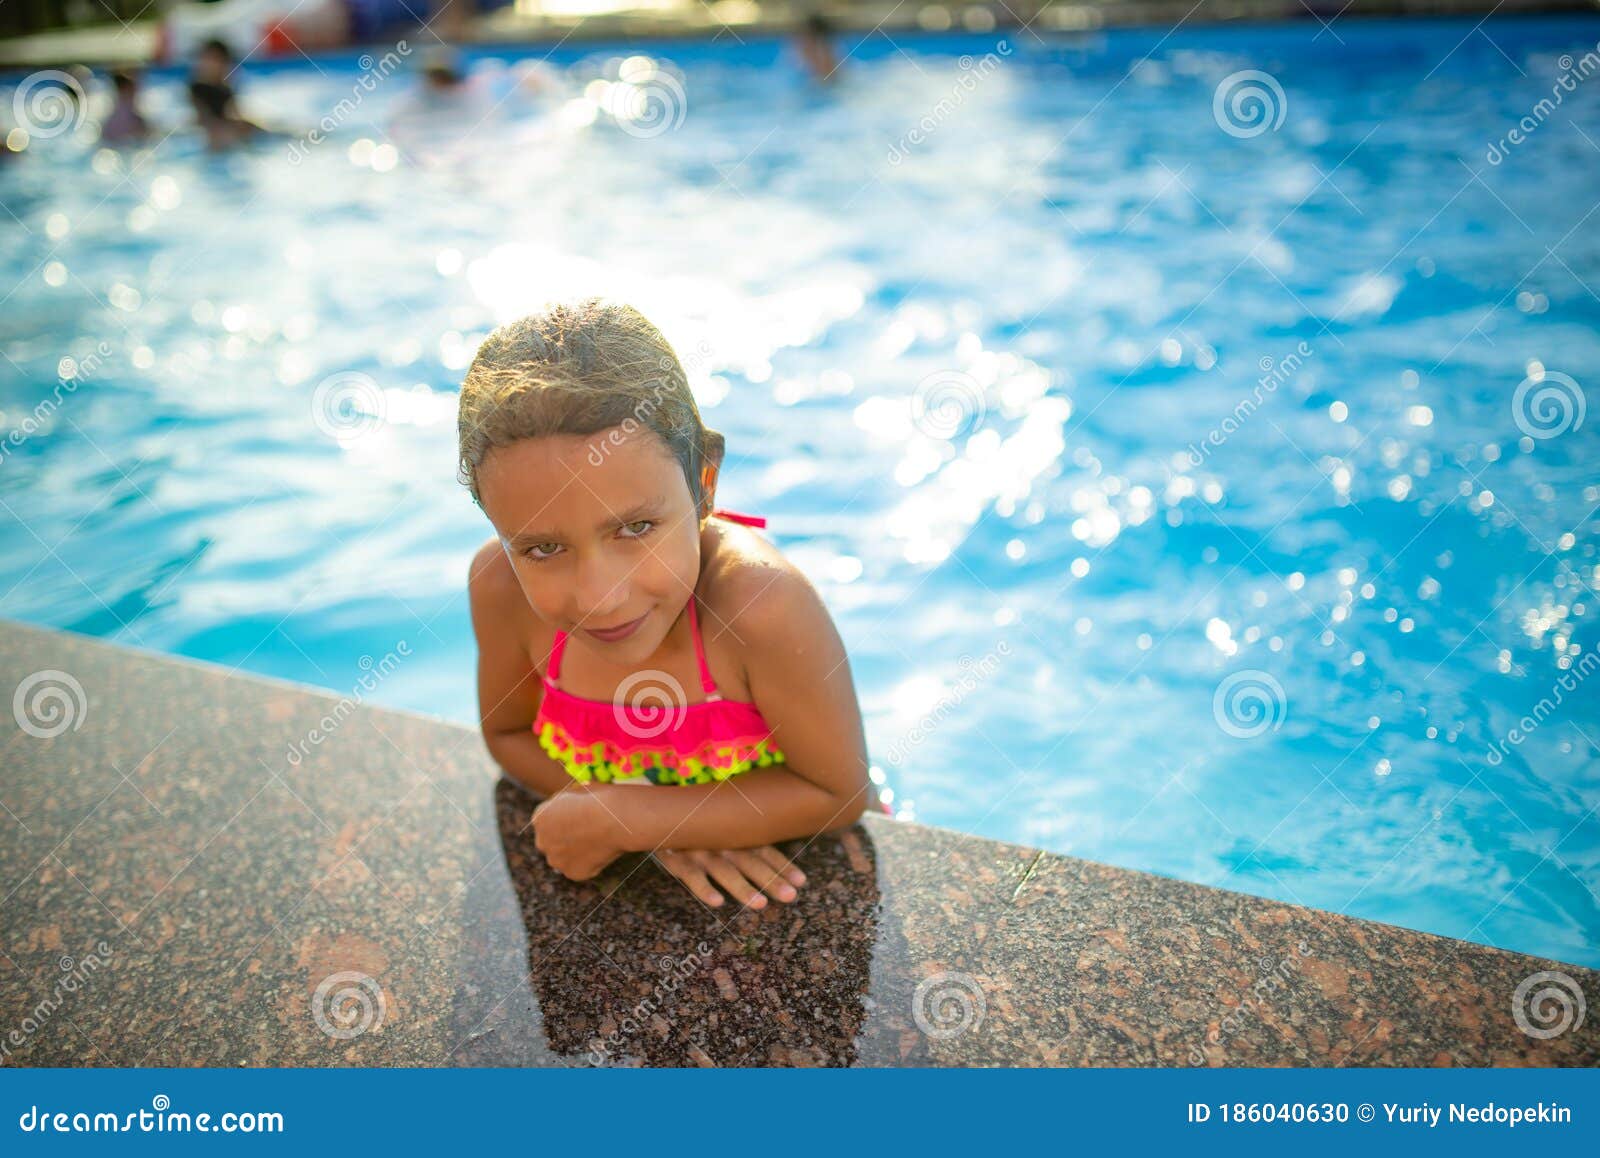 Pretty Little Girl With Bikini In A Pool Day Stock Photo 